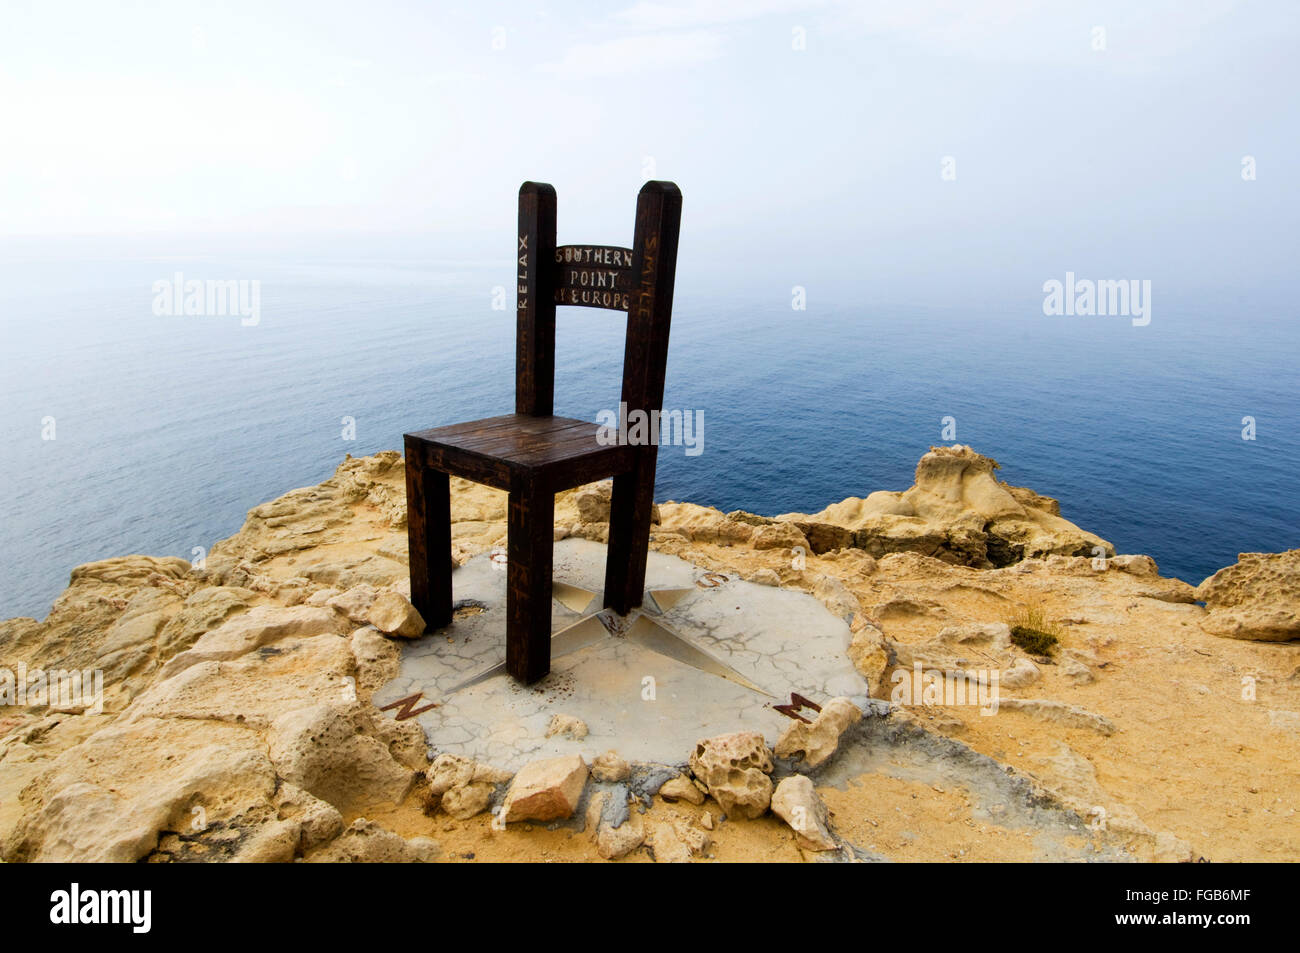 Griechenland, Kreta, Insel Gavdos, ein Kunstwerk, ein riesiger Stuhl, steht am Kap Tripiti, dem südlichsten Punkt Europas. Stock Photo